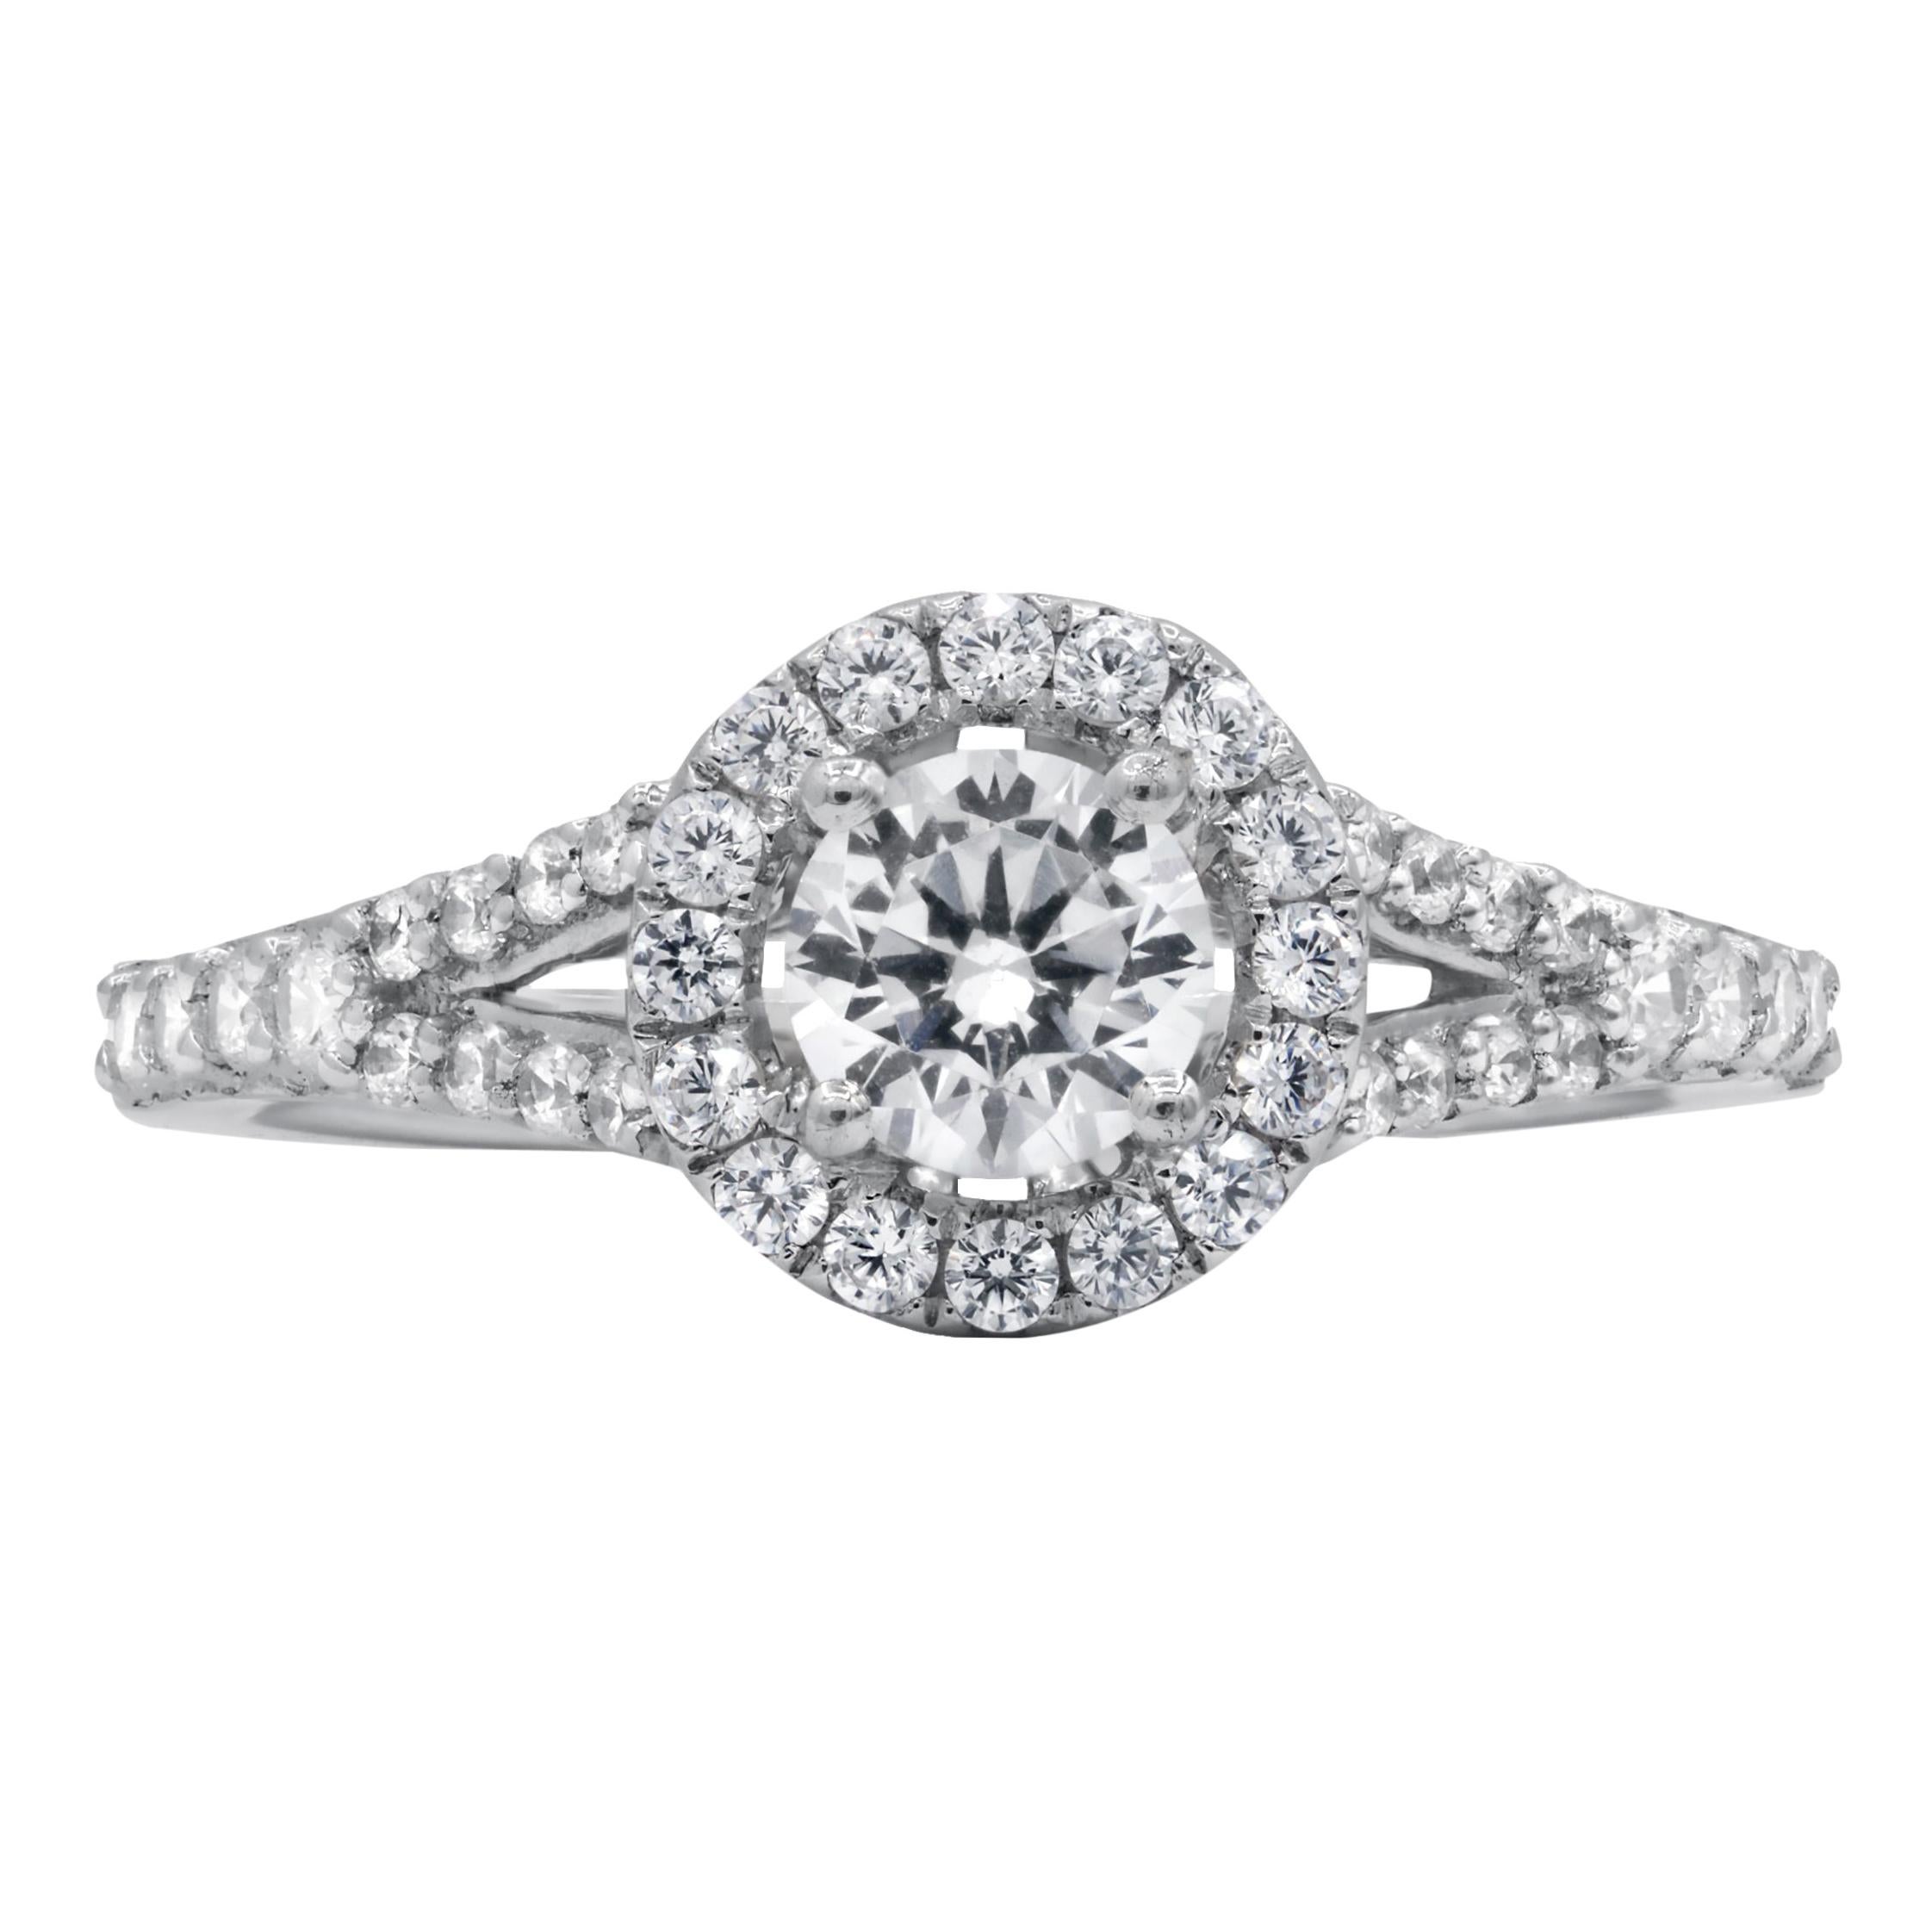 Diana M. Fine Jewelry 14k 0.90 Ct Tw Diamond Ring